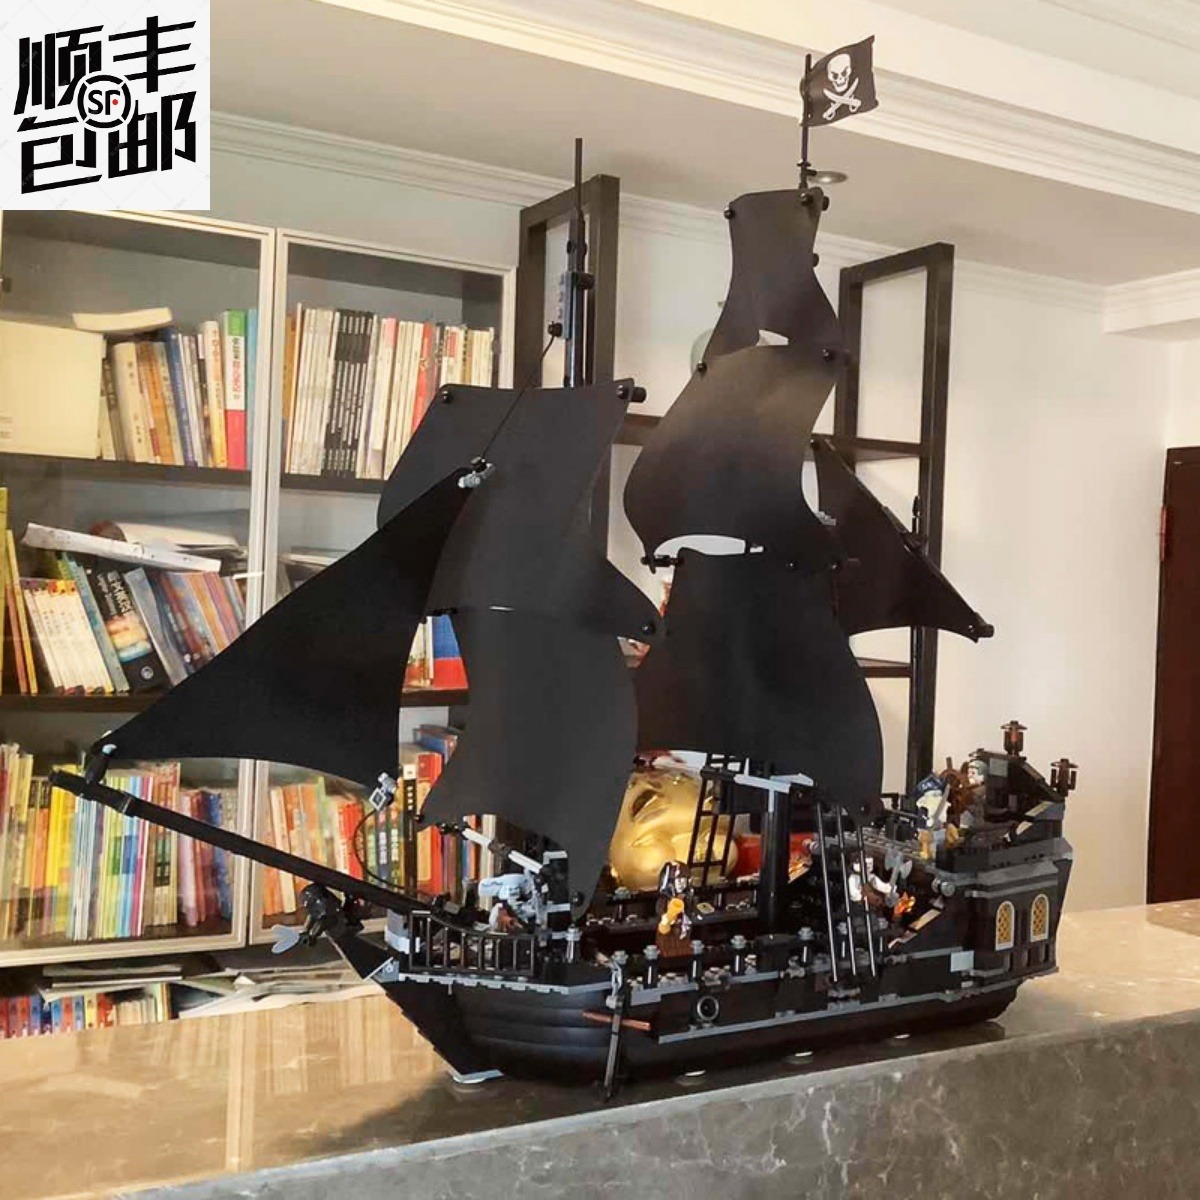 パイレーツオブカリビアン船モデルブラックパール帆船アン女王組み立てブロックおもちゃ教育少年ギフト